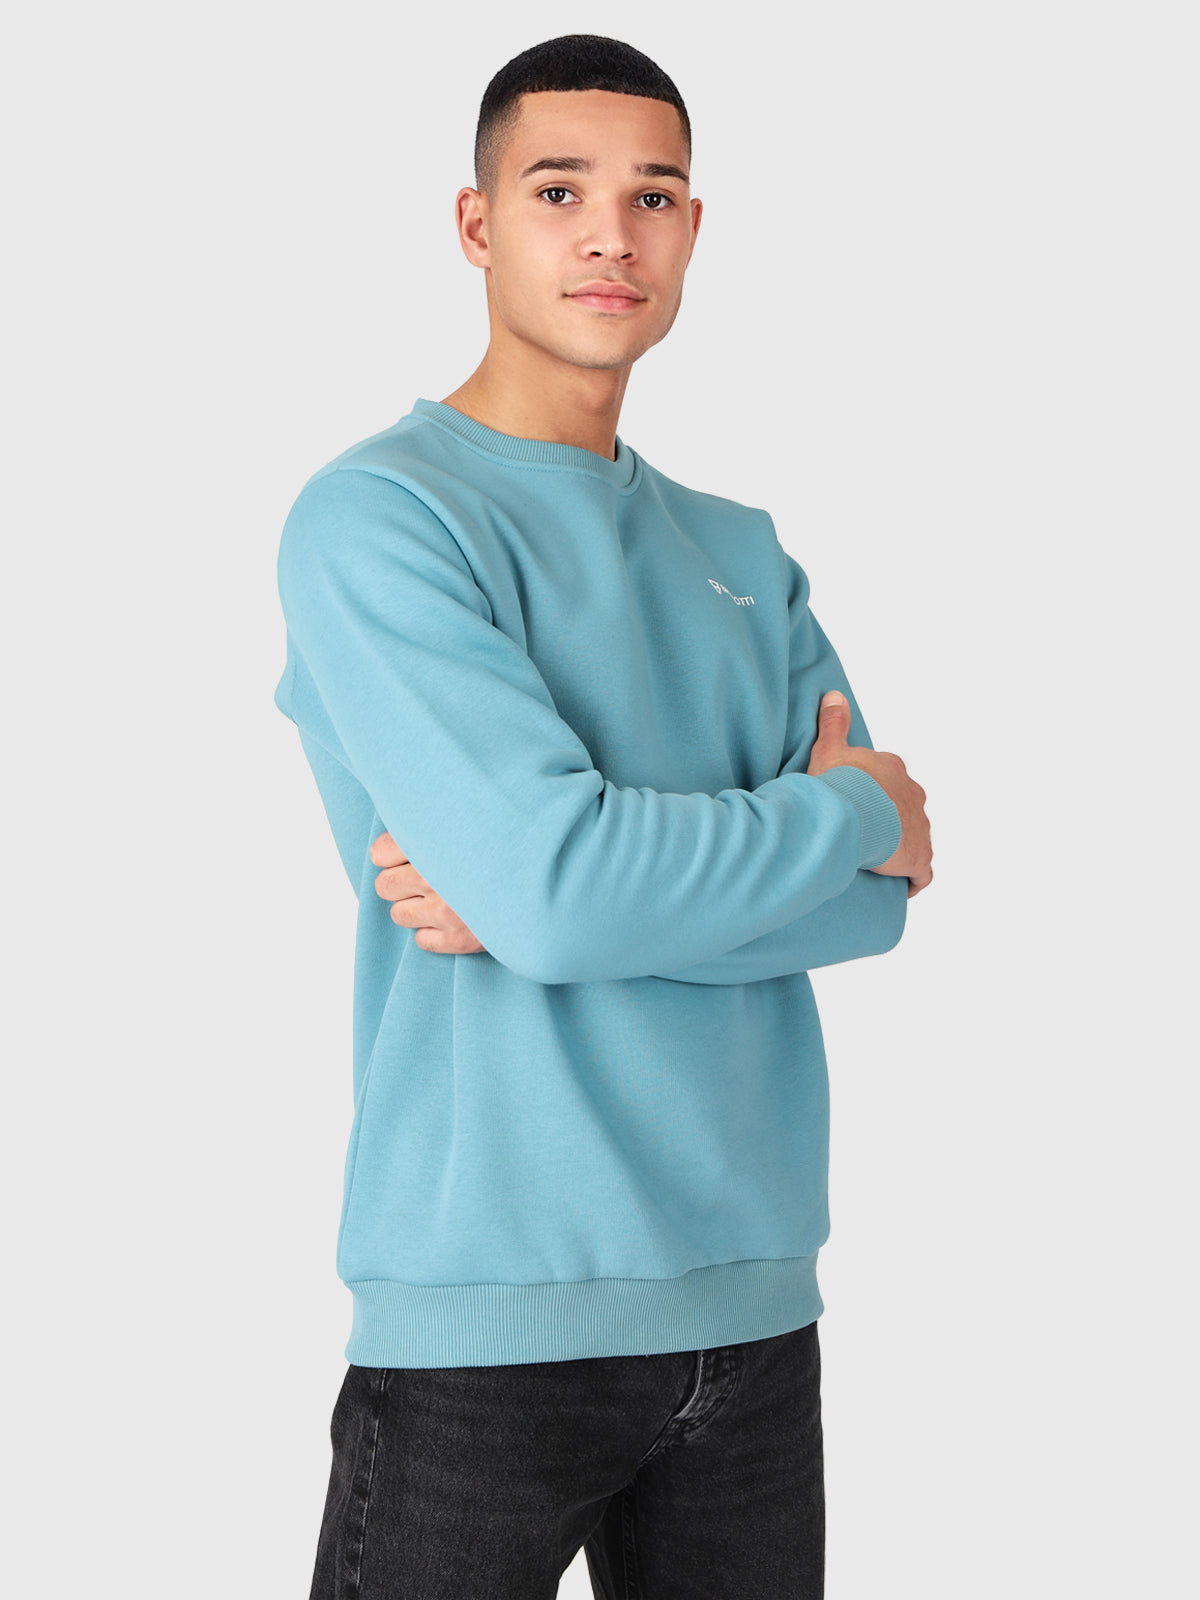 Natch-R Herren Sweatshirt | Blau